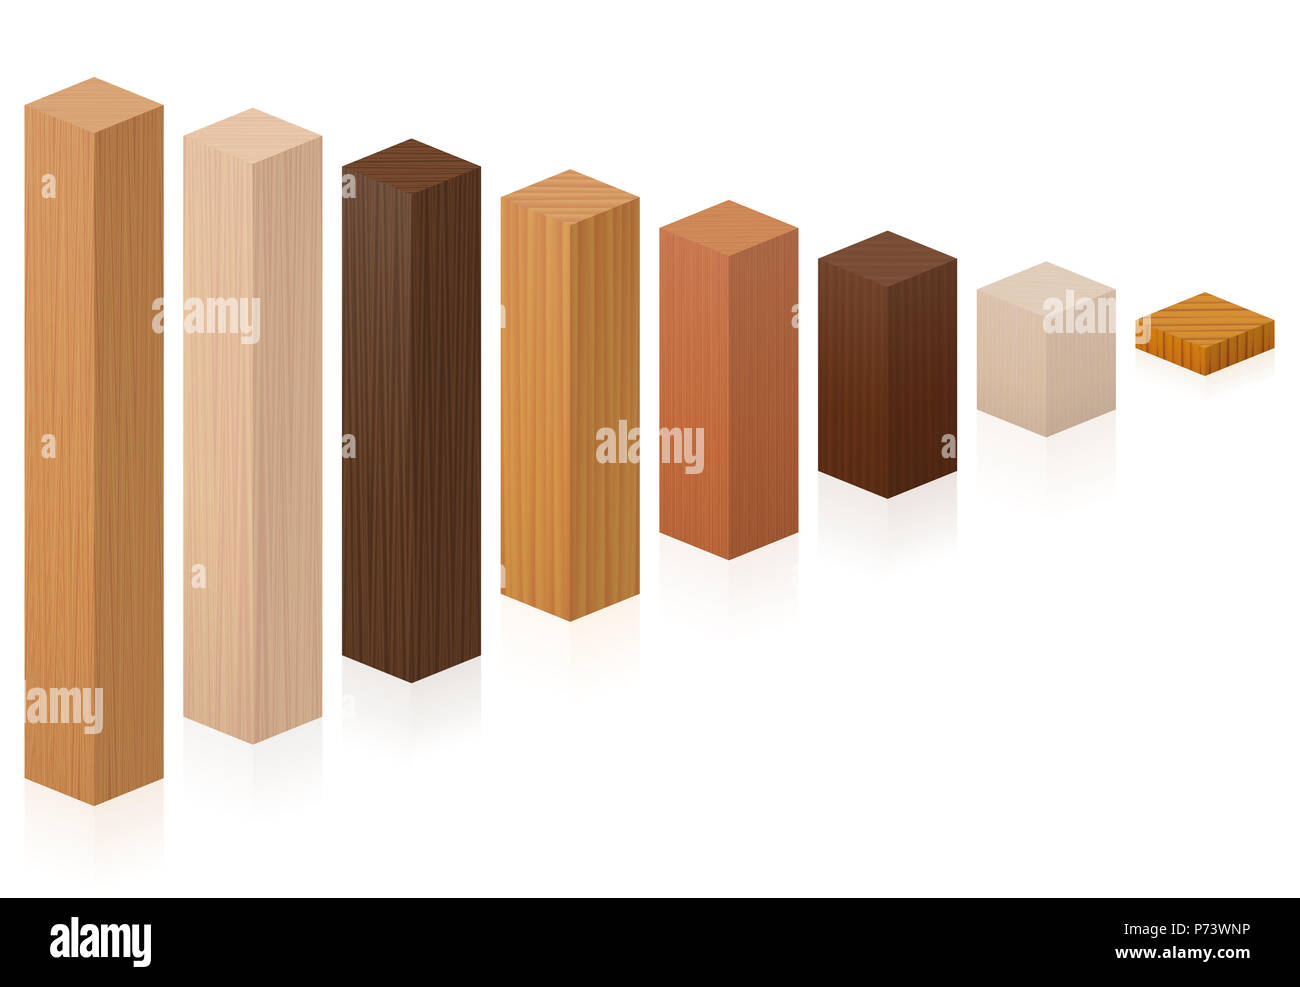 Pezzi di diversi tipi di legno sempre più breve - blocchetti di legno da vari alberi - illustrazione su sfondo bianco. Foto Stock